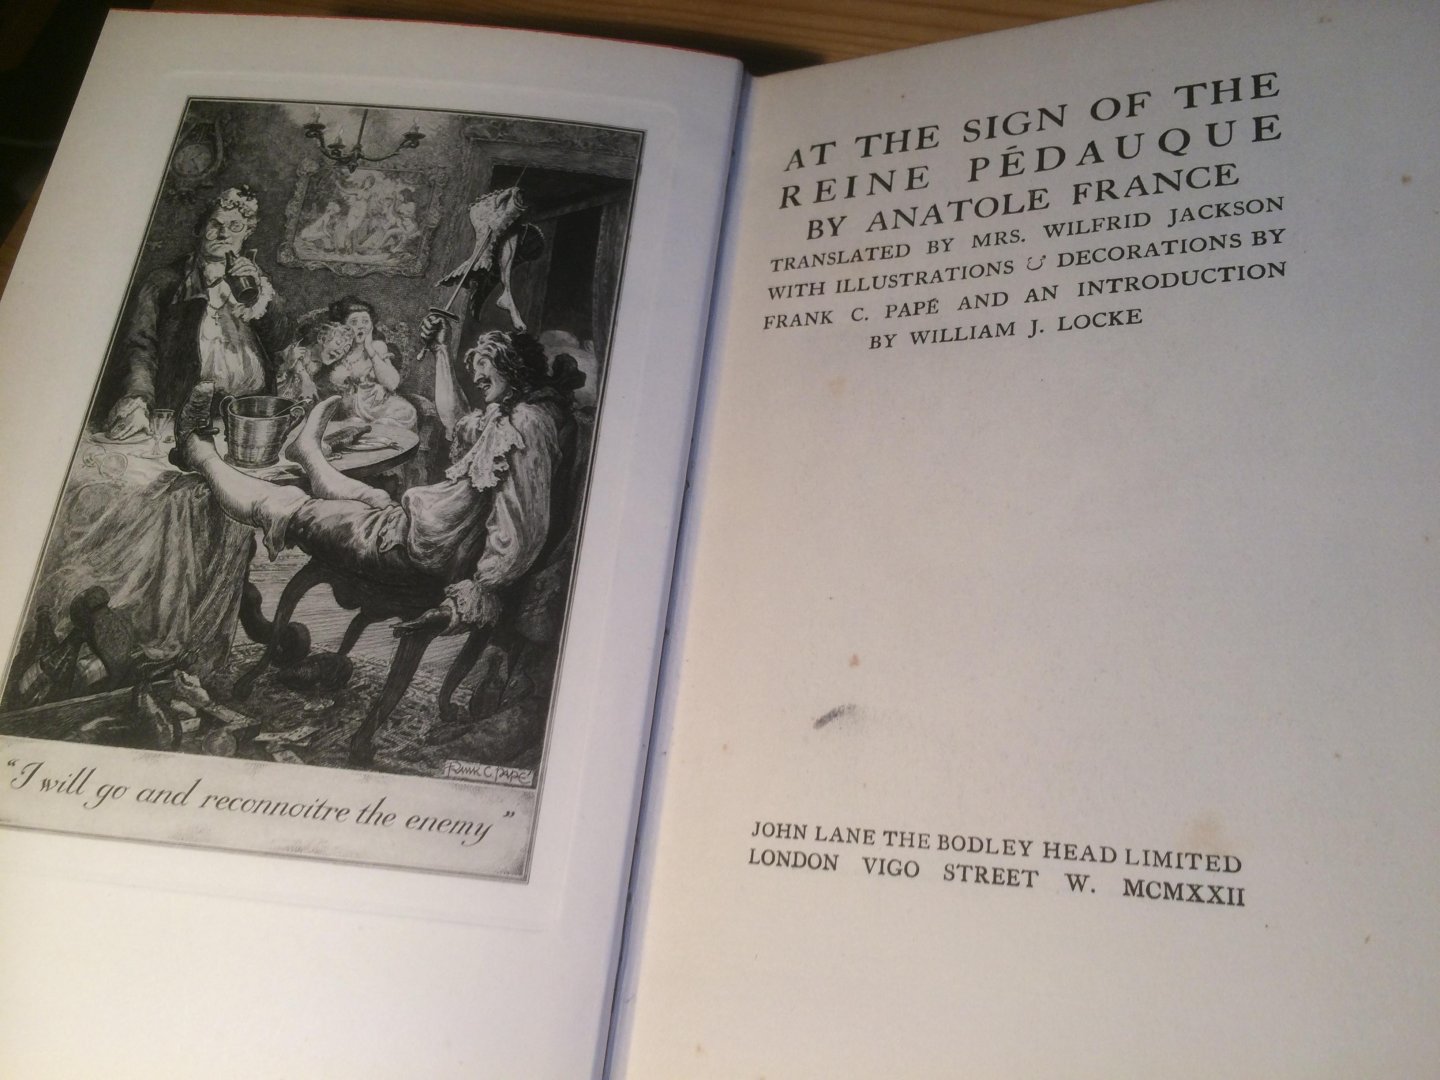 France, Anatole & Frank C Papé (illustraties) - At the Sign of the Reine Pédauque